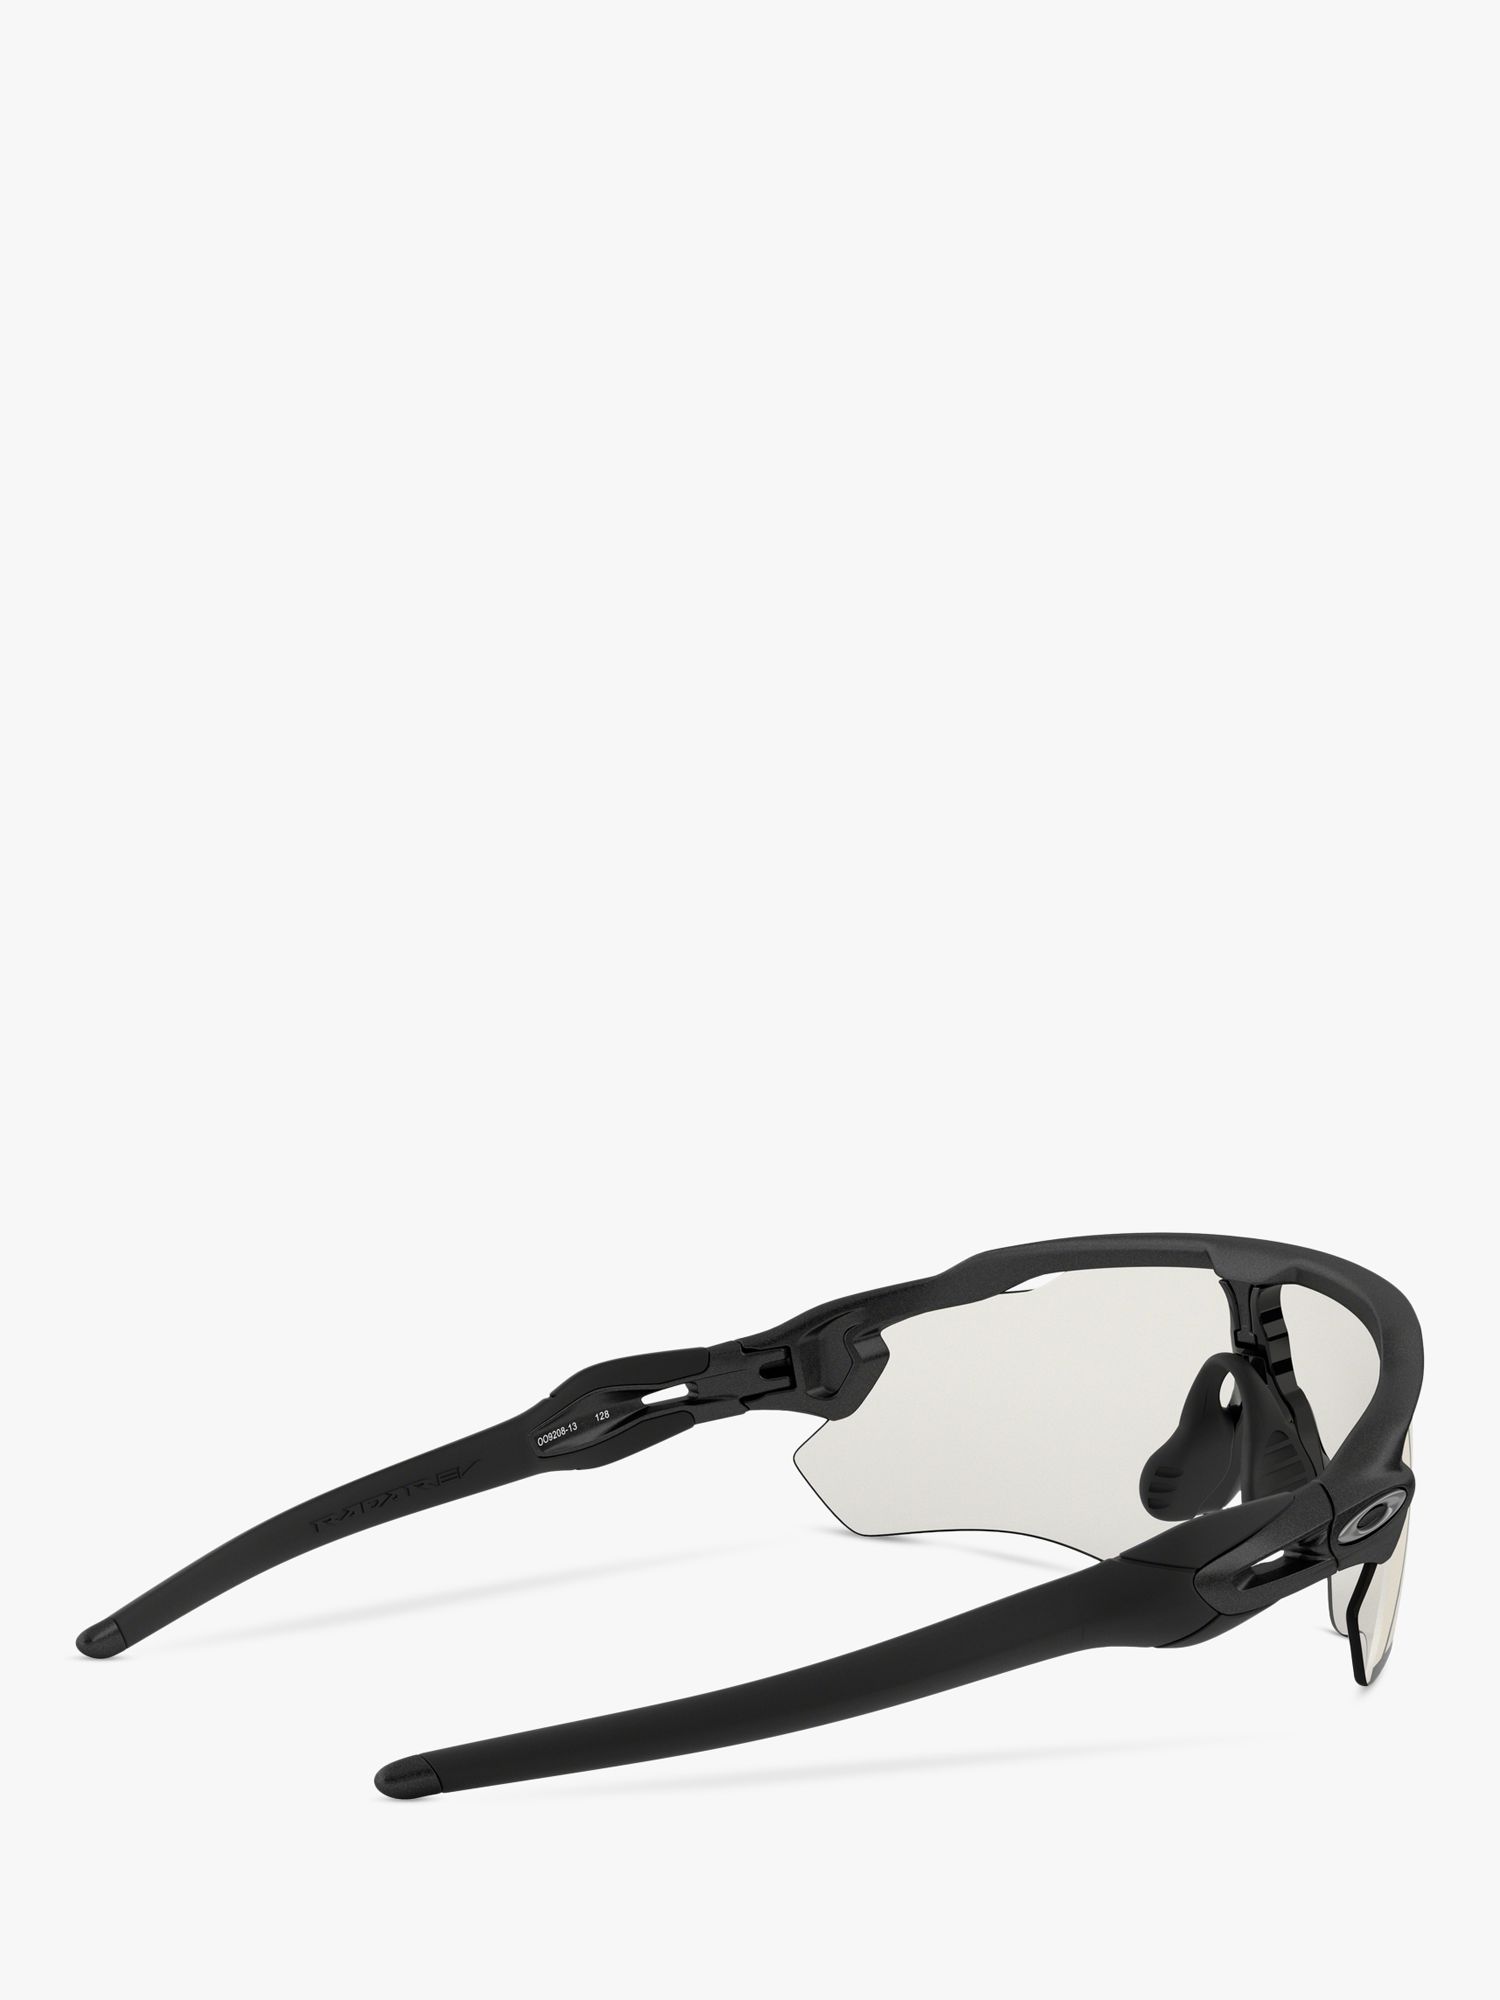 Oakley OO9208 Men's Radar EV Path Wrap Sunglasses, Black/Clear